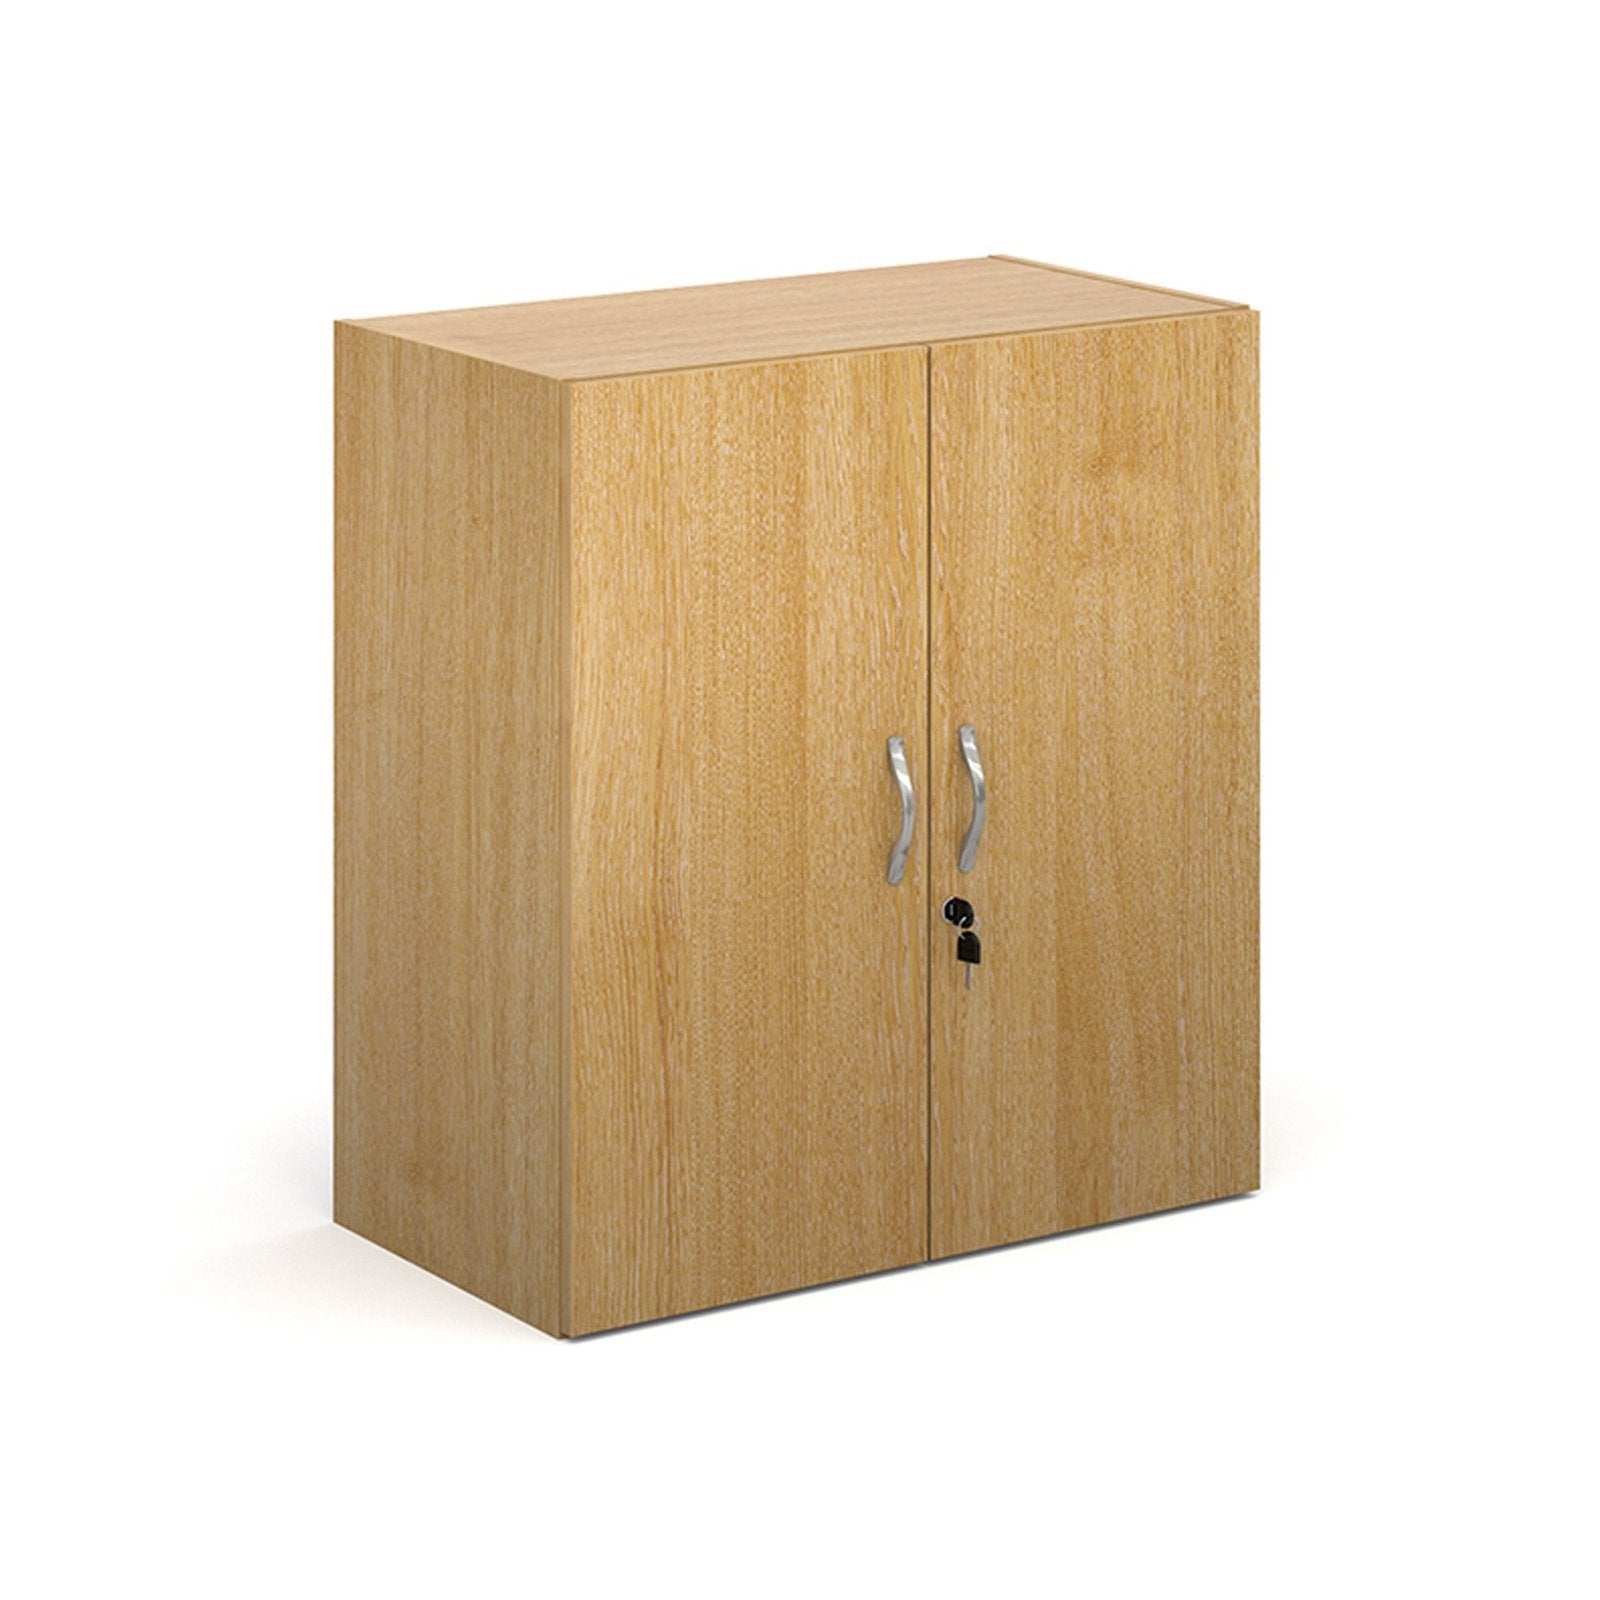 Contract double door cupboard - Office Products Online